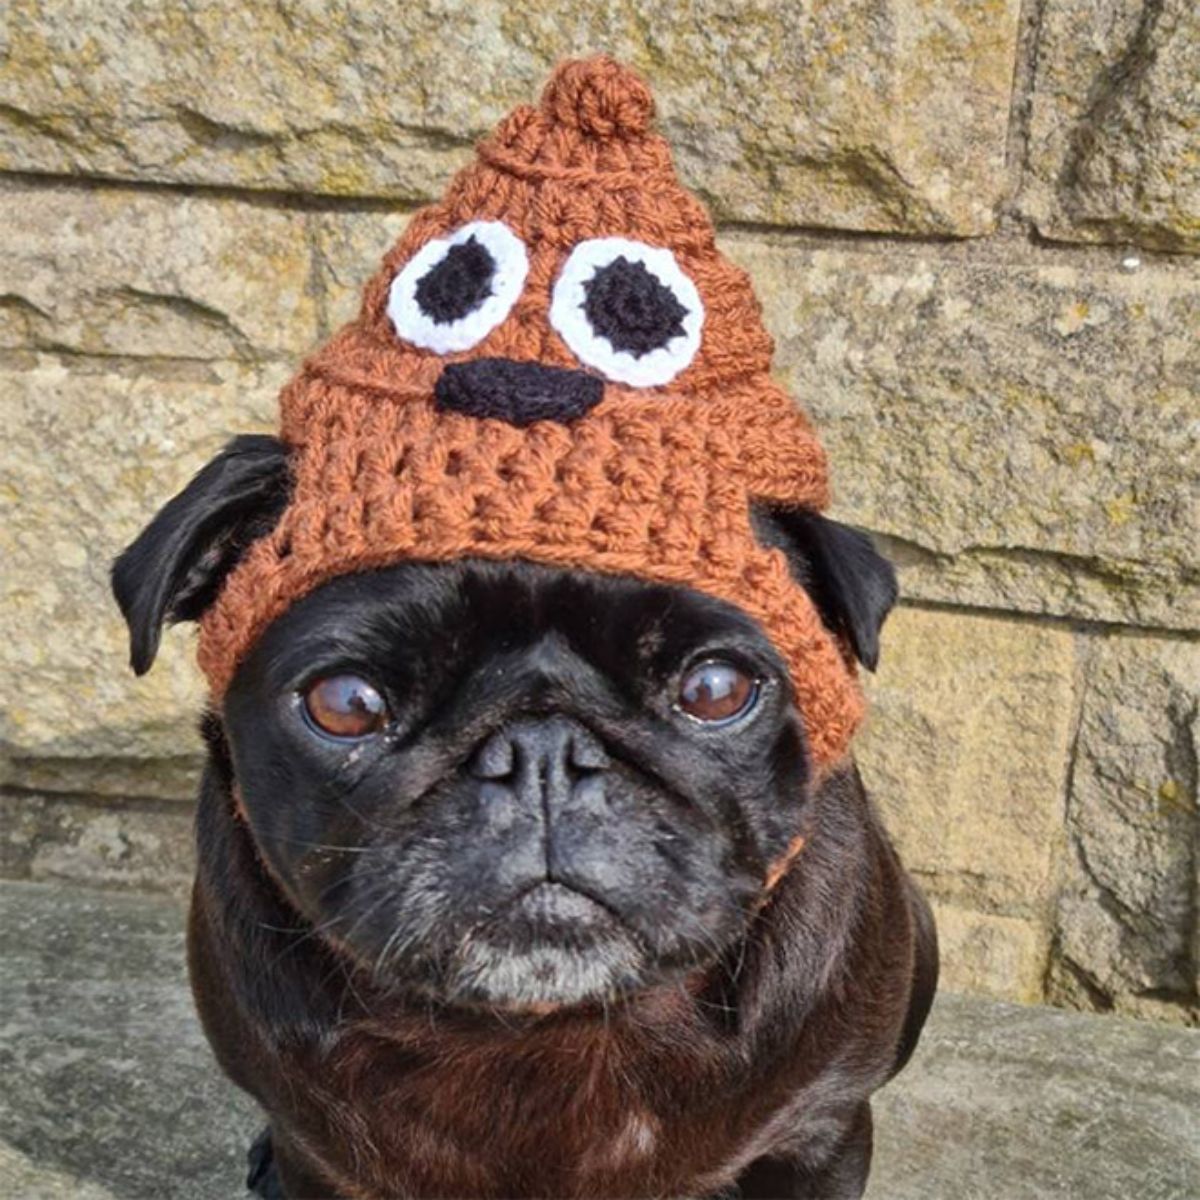 black pug wearing brown crocheted hat that looks like the poop emoji